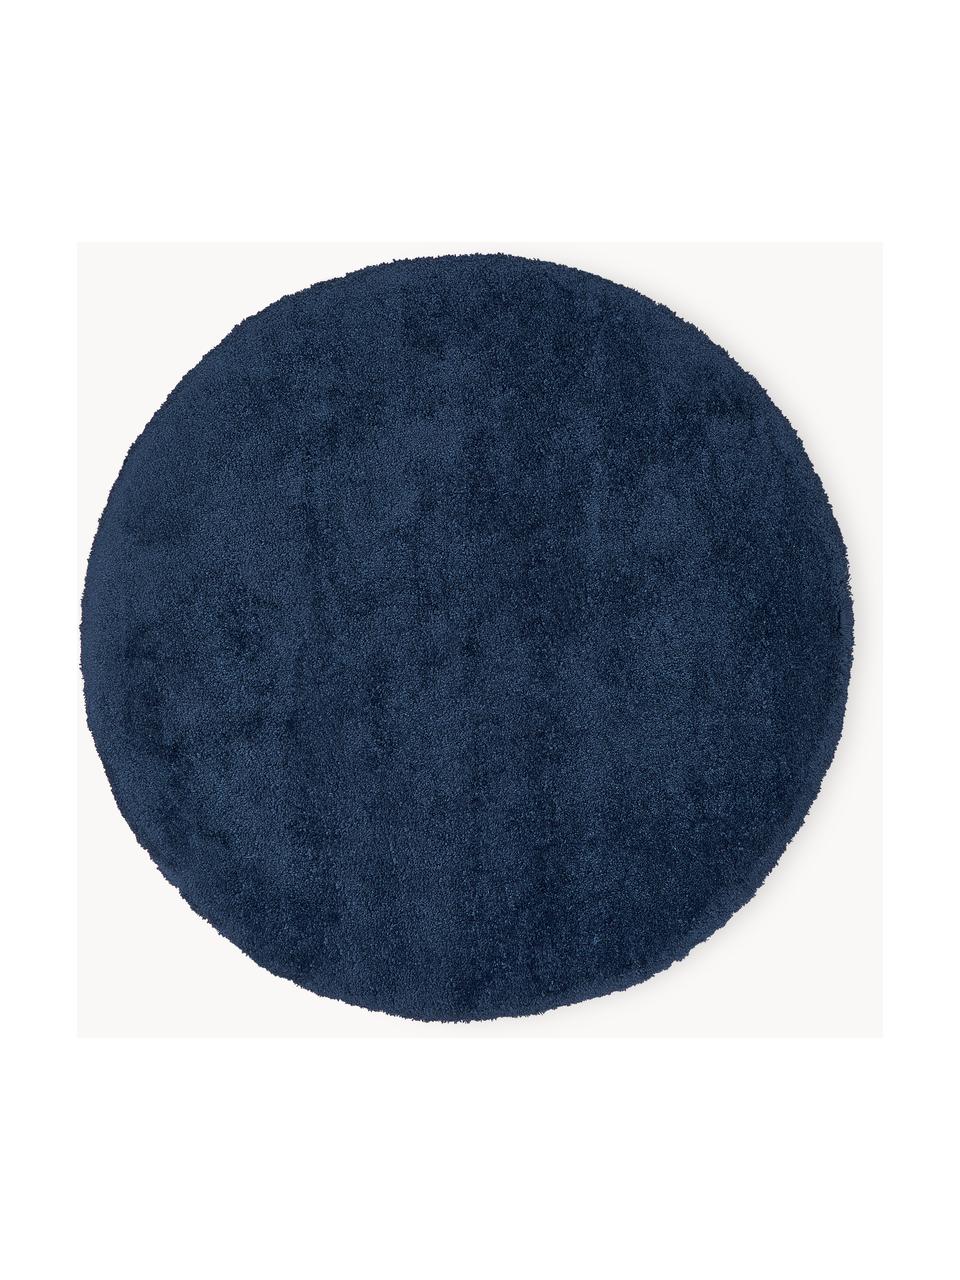 Tappeto rotondo morbido a pelo lungo Leighton, Retro: 70% poliestere, 30% coton, Blu scuro, Ø 120 cm (taglia S)